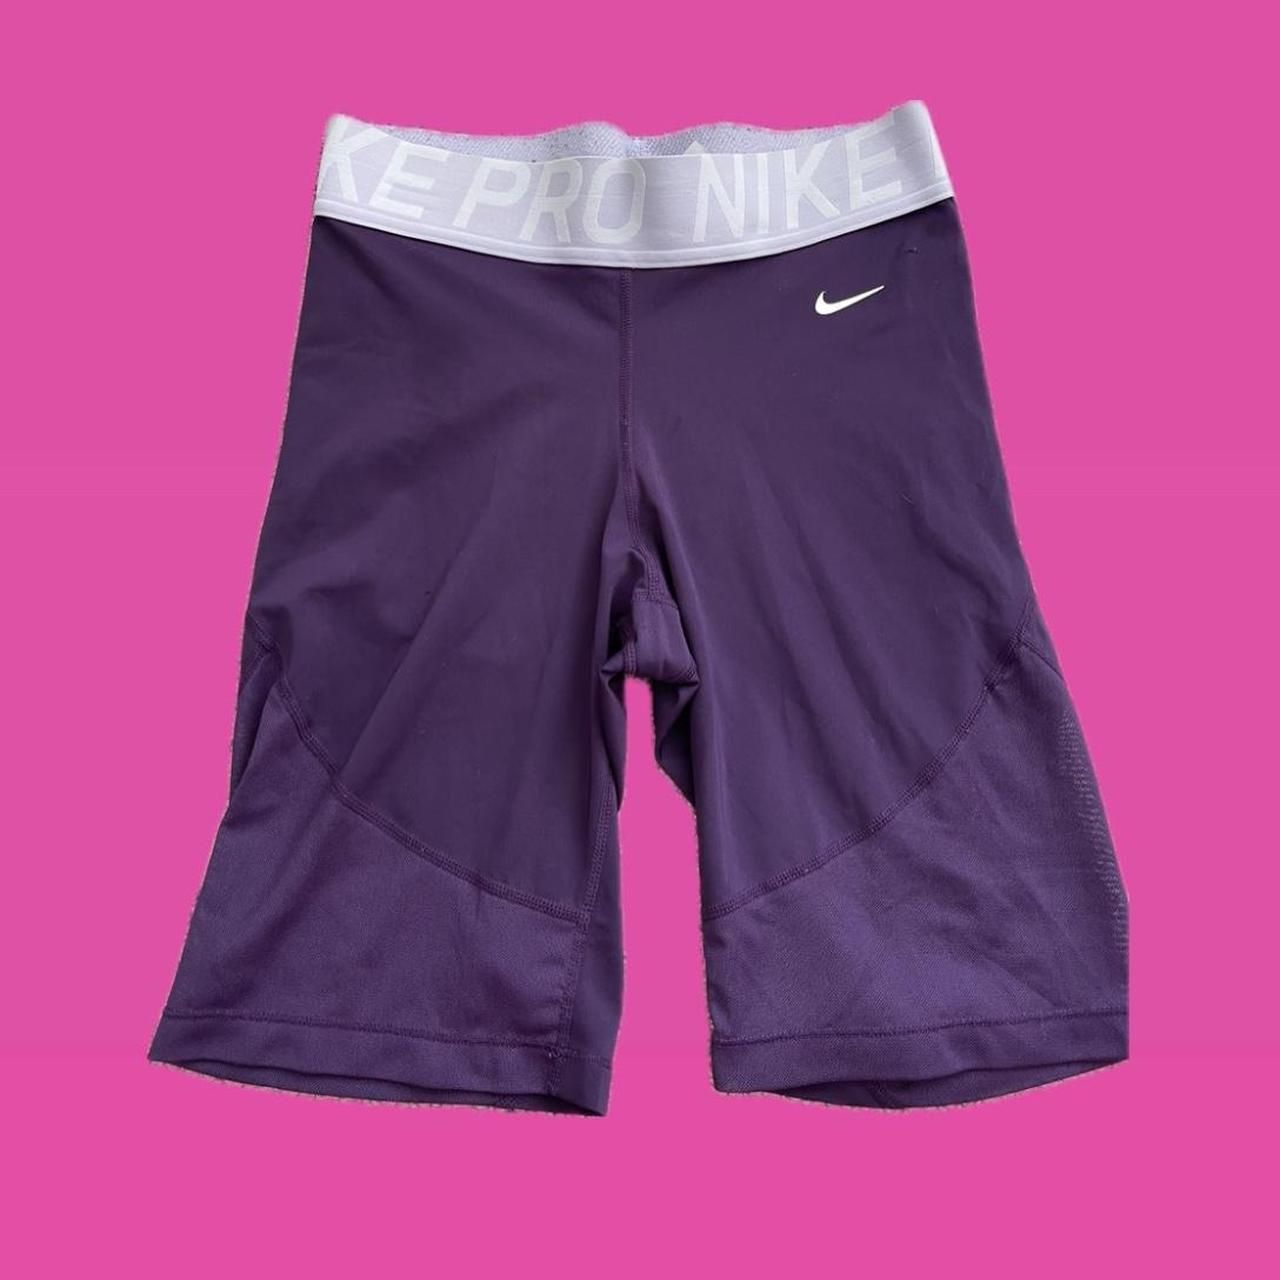 Gymshark Flex biker shorts purple workout shorts - Depop